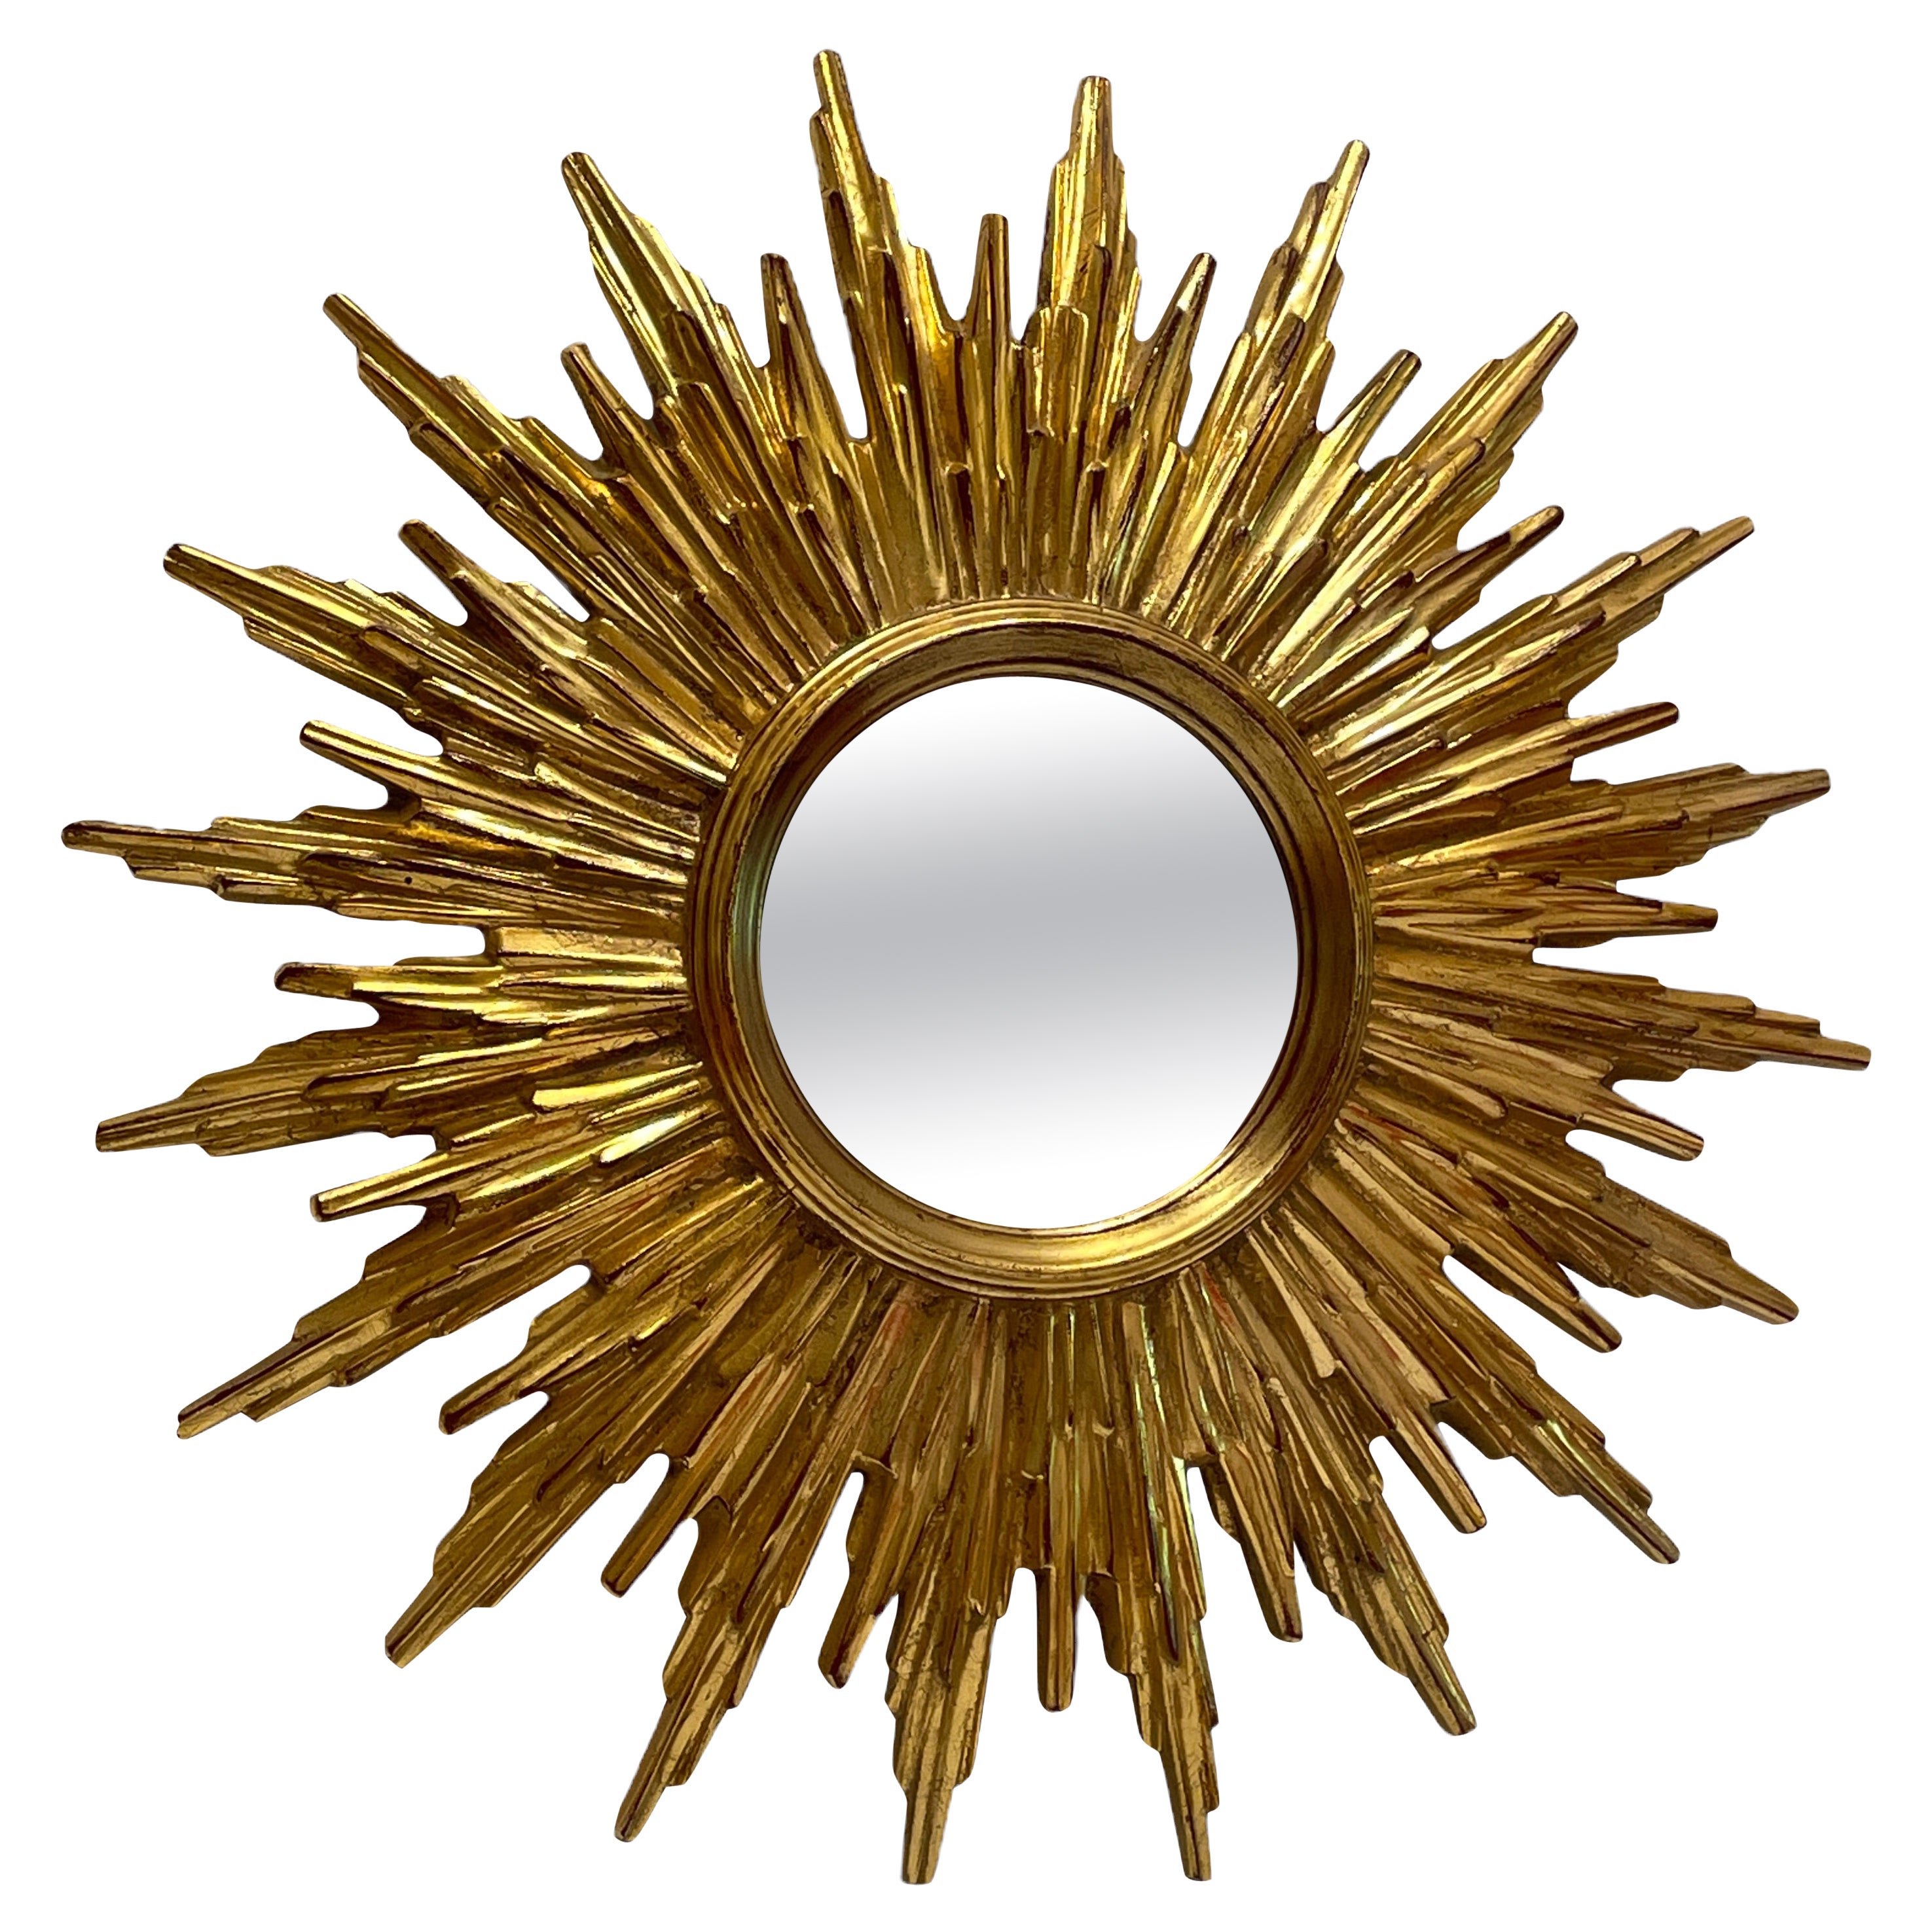 Beautiful Gilded Starburst Sunburst Mirror circa 1980s Made in Belgium